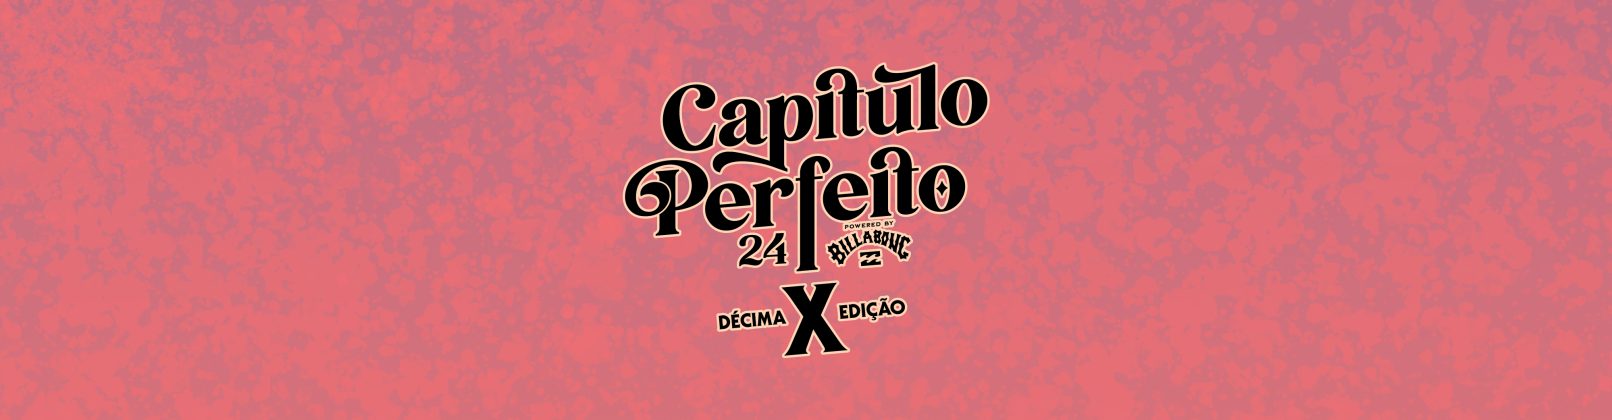 Capítulo Perfeito powered by Billabong, Carcavelos, Portugal. Foto: Divulgação.